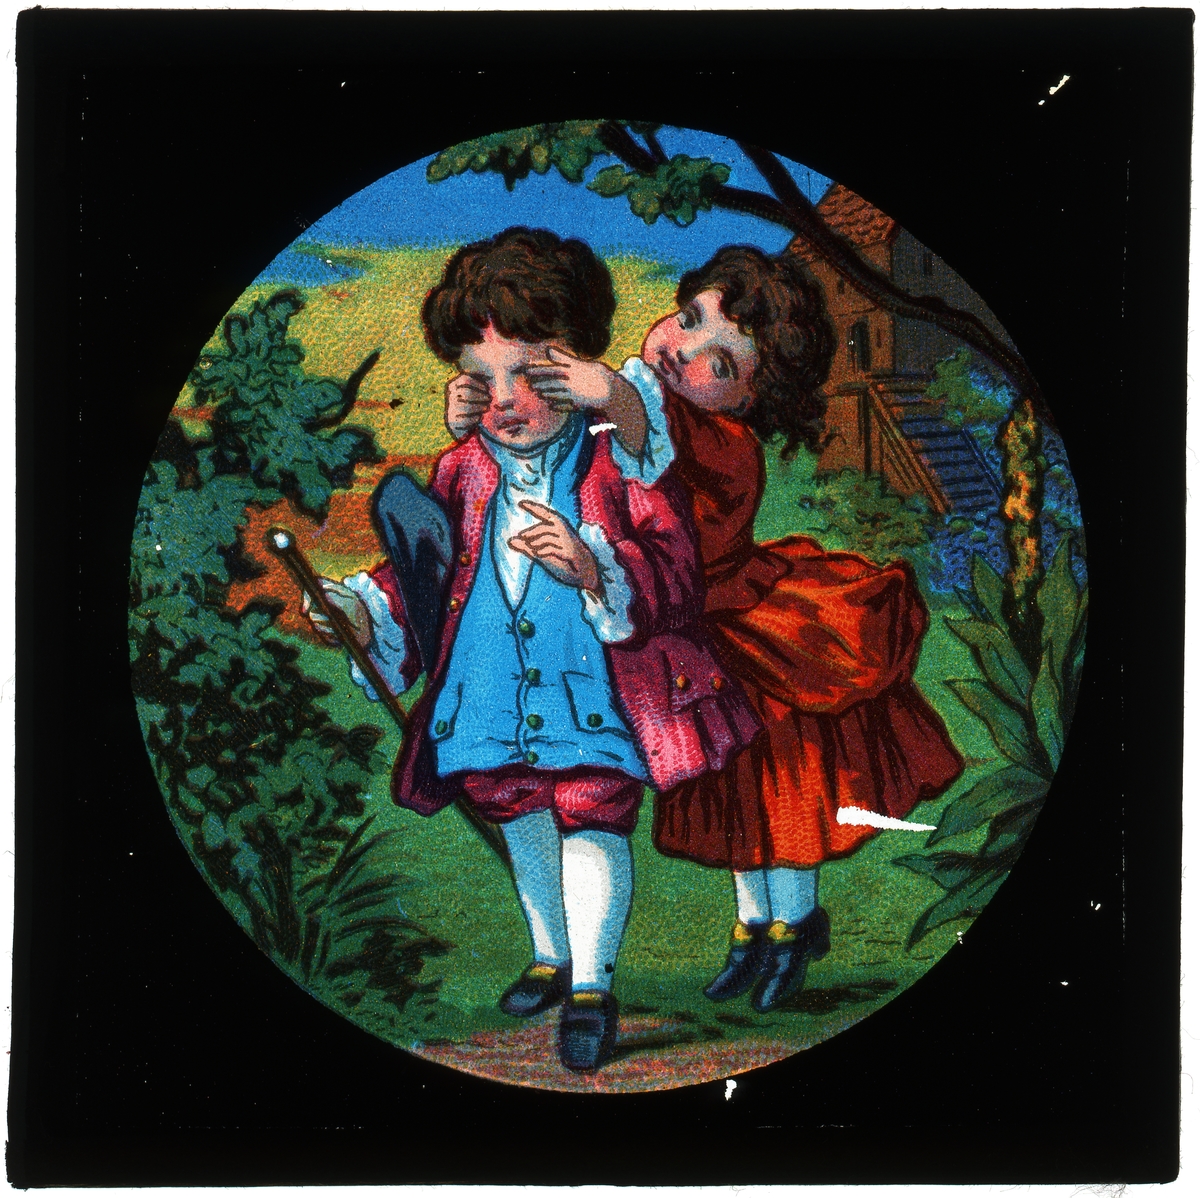 Målad bild på glas för skioptikon/laterna magica.
Pojke och flicka i skogen.